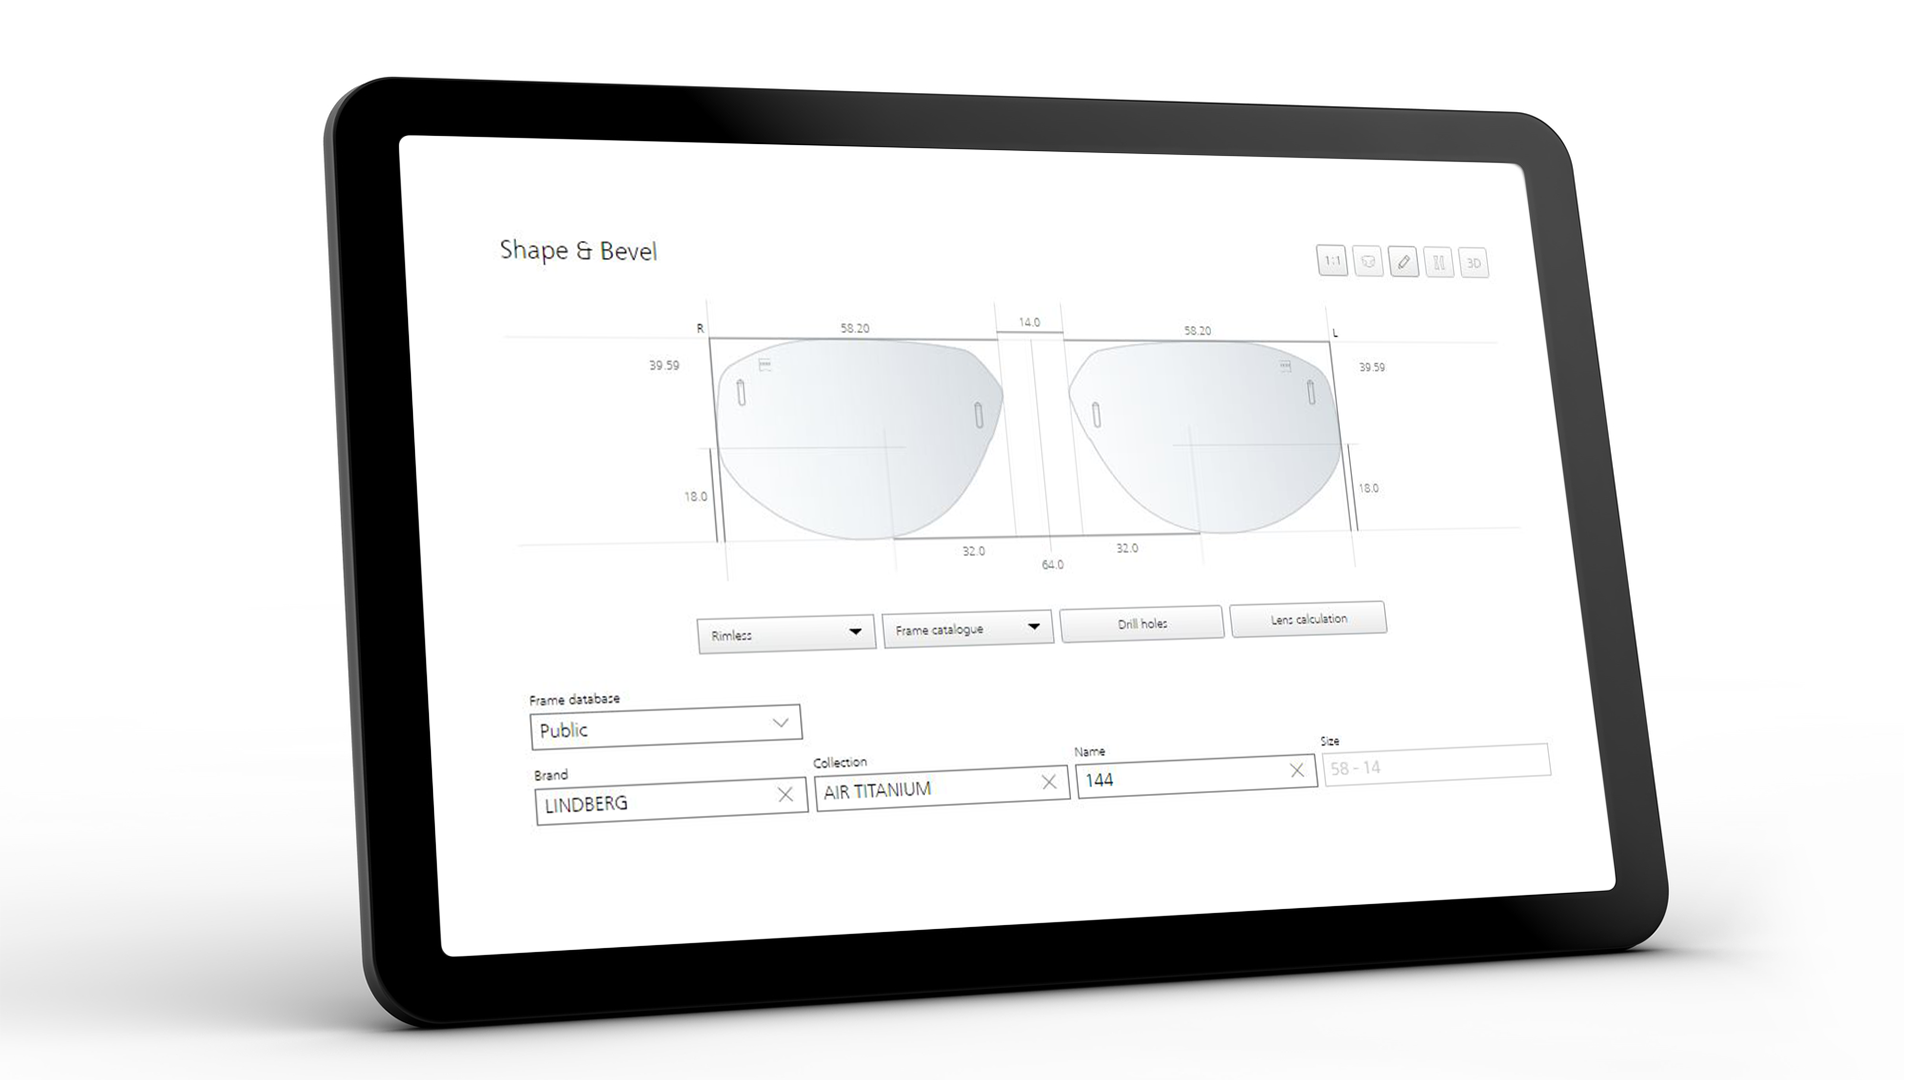 Экран планшета, на котором отображается интерфейс ZEISS VISUSTORE для выбора формы и наклона 